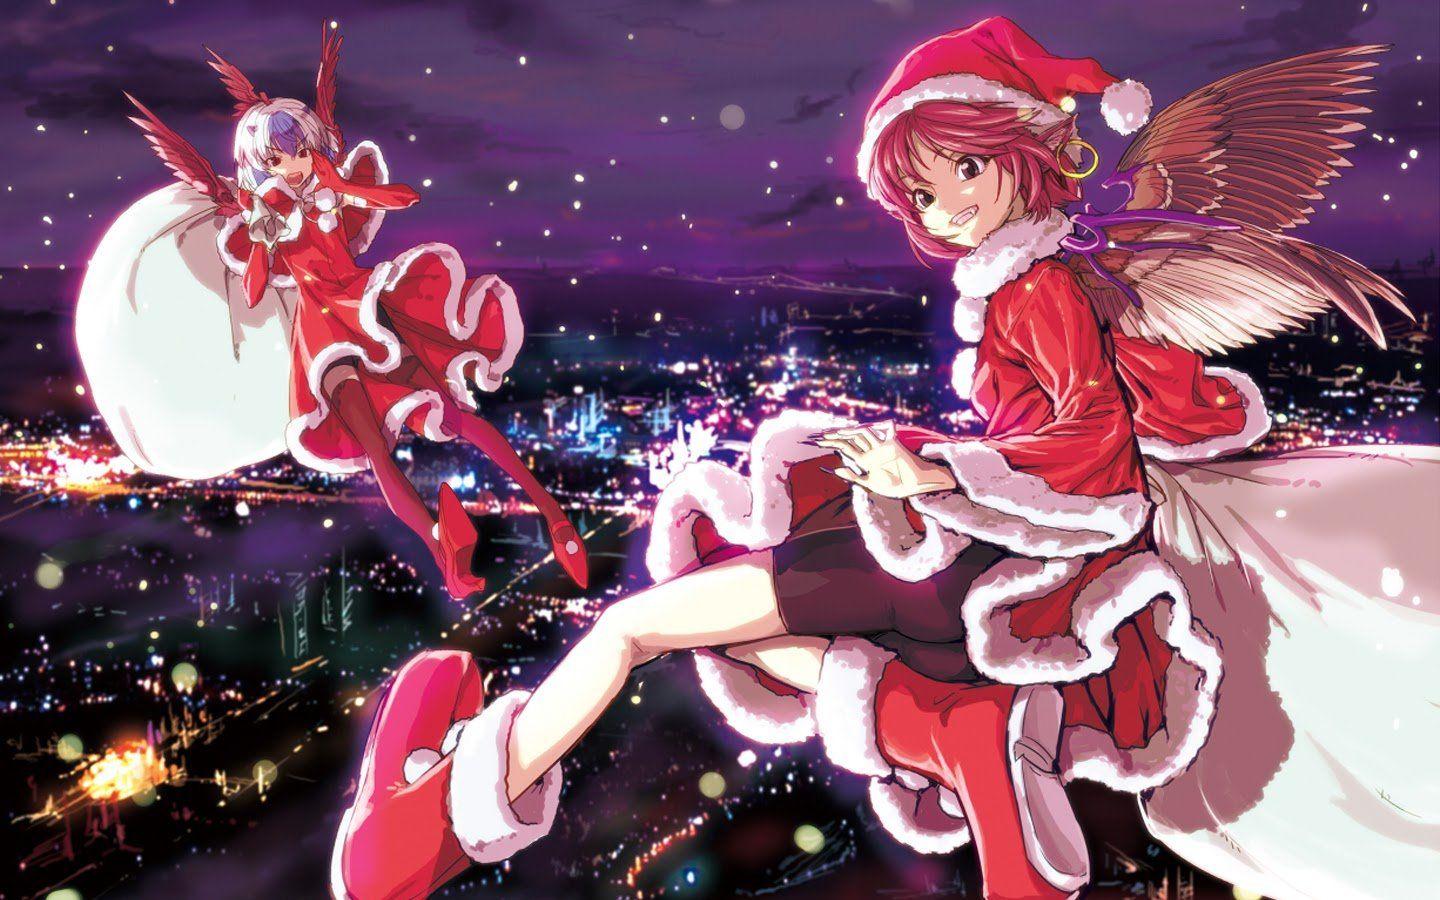 Anime Girl Christmas Wallpapers: Sắp đến Giáng sinh rồi! Hãy tạo không khí Giáng sinh cho màn hình máy tính của bạn với những hình ảnh Anime Girl Christmas Wallpapers tuyệt vời. Bạn sẽ cảm thấy đầy niềm vui và ấm áp với những hình ảnh ngộ nghĩnh và đáng yêu này. Hãy truy cập ngay để thưởng thức!